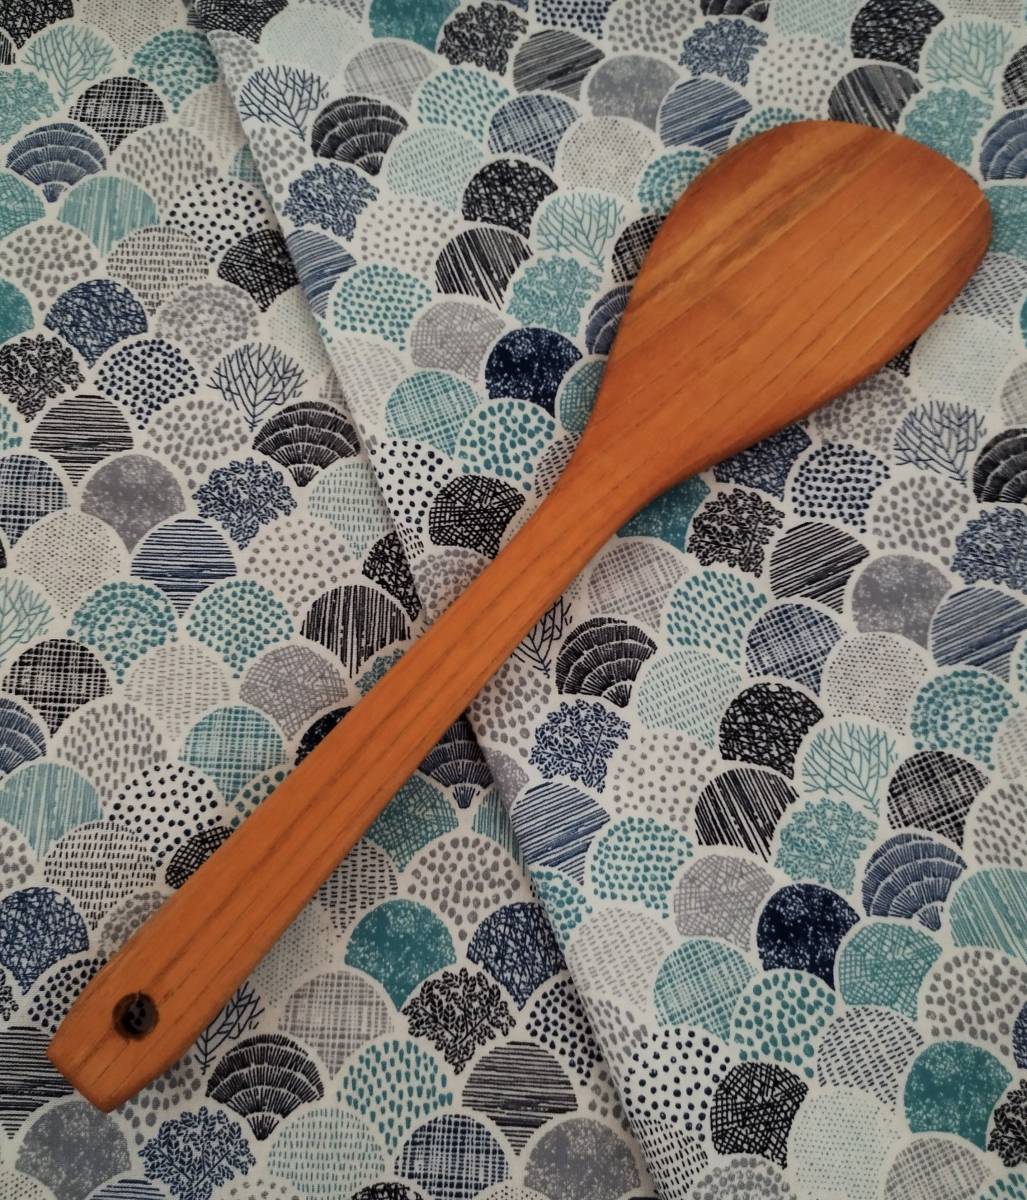 岩手県産のヤマザクラを使って作られました　『ターナー』です。木工職人さん手作りの品です。